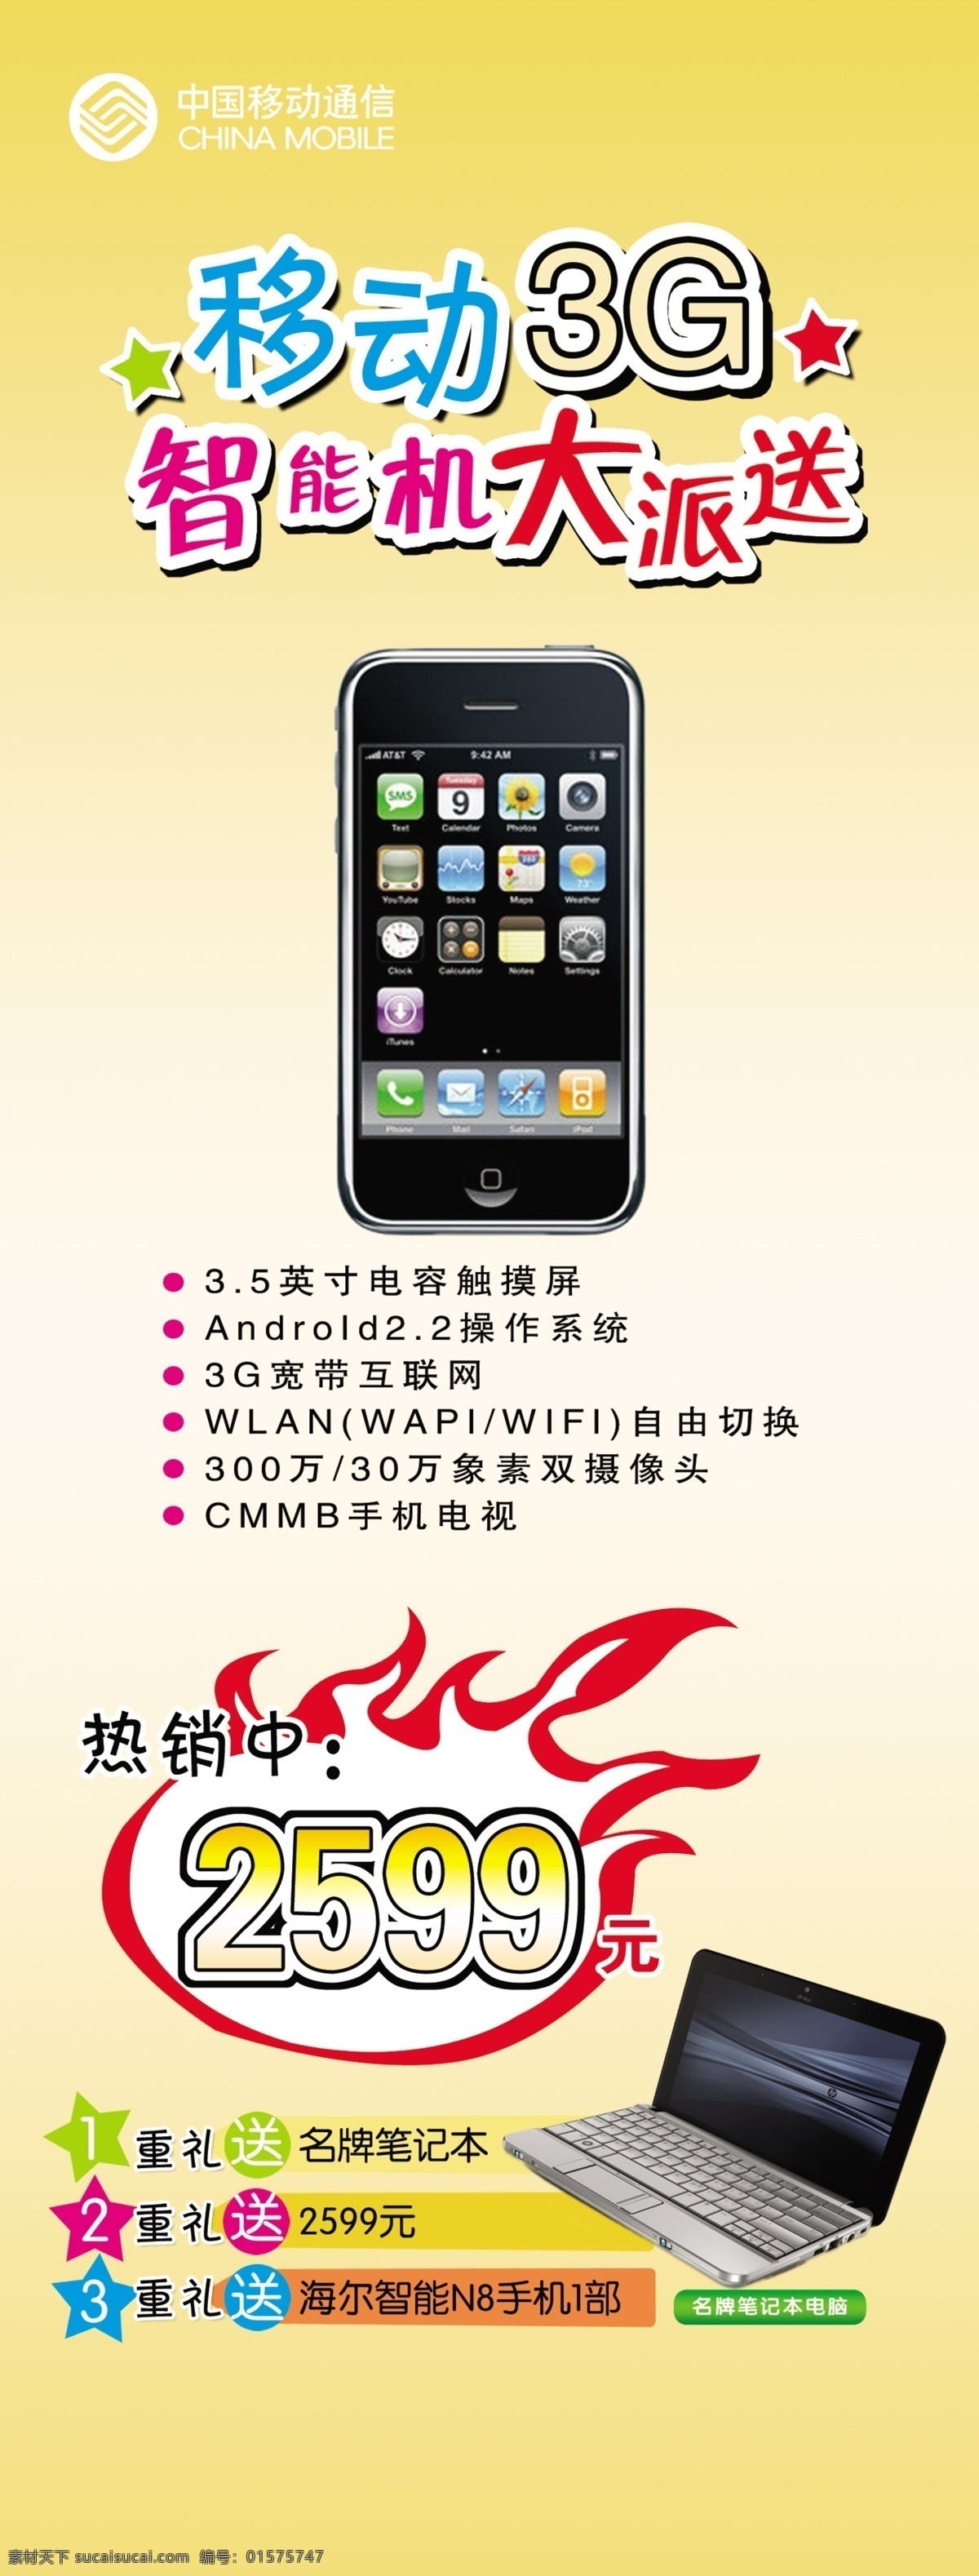 3g 分层 笔记本 促销 促销活动 电脑 黄色 黄色背景 中国移动 移动 活动 移动促销 手机 智能机 火 源文件 矢量图 现代科技